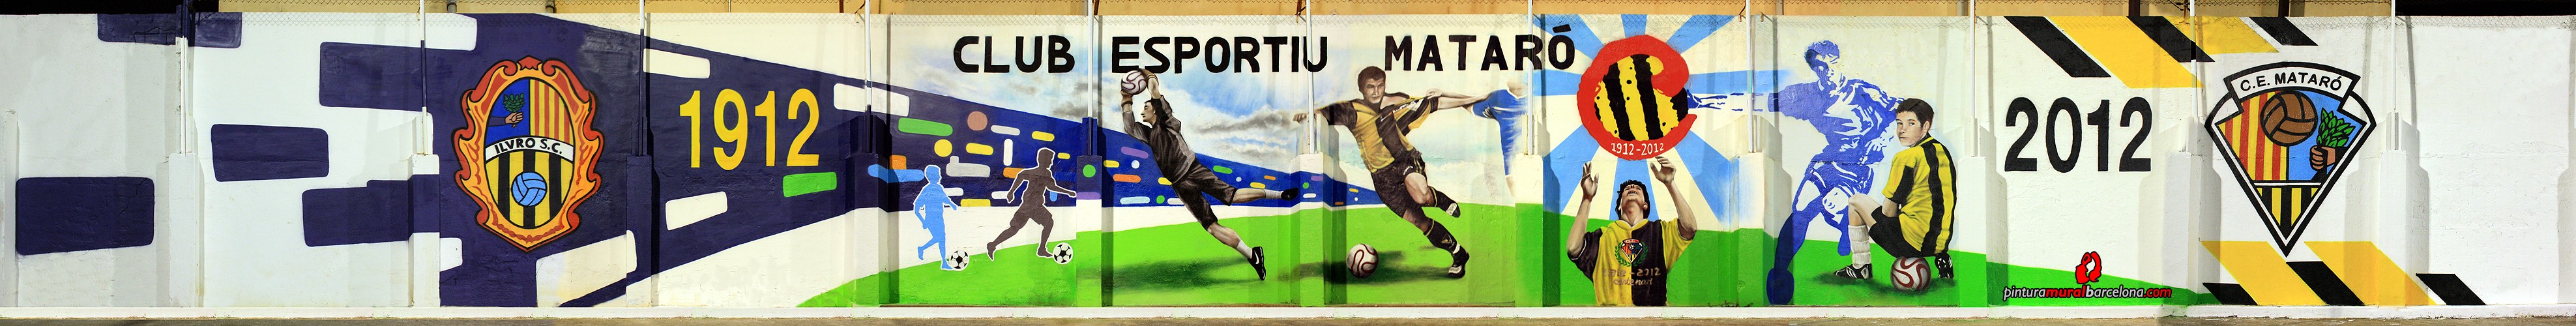 mural-ce-mataro-campo-futbol-graffiti